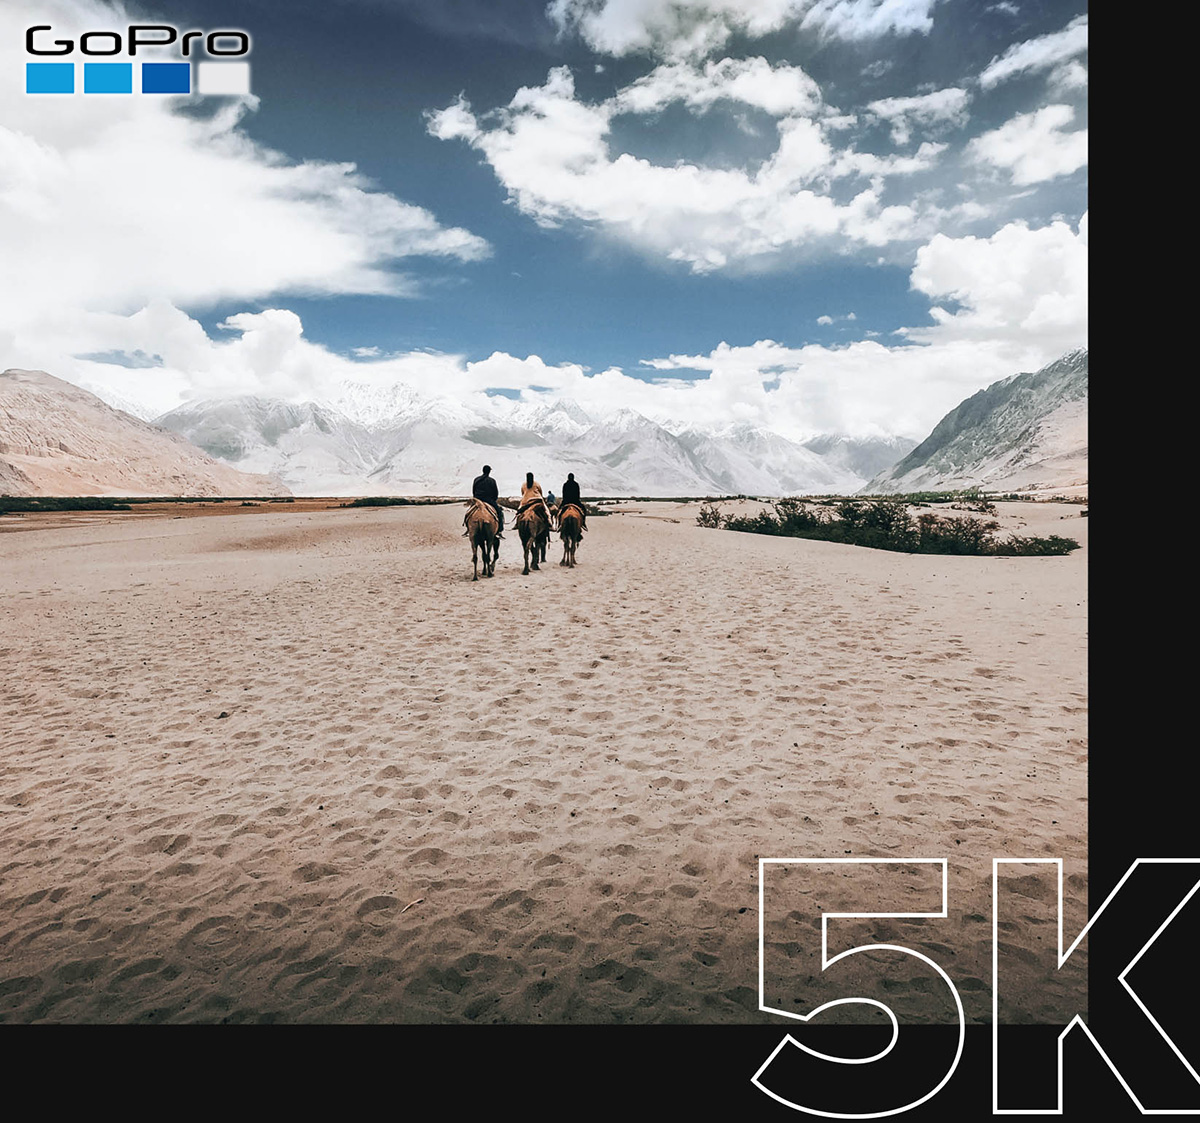 Un frame di un video girato con risoluzione 5K ritrae delle persone che cavalcano verso le montagne